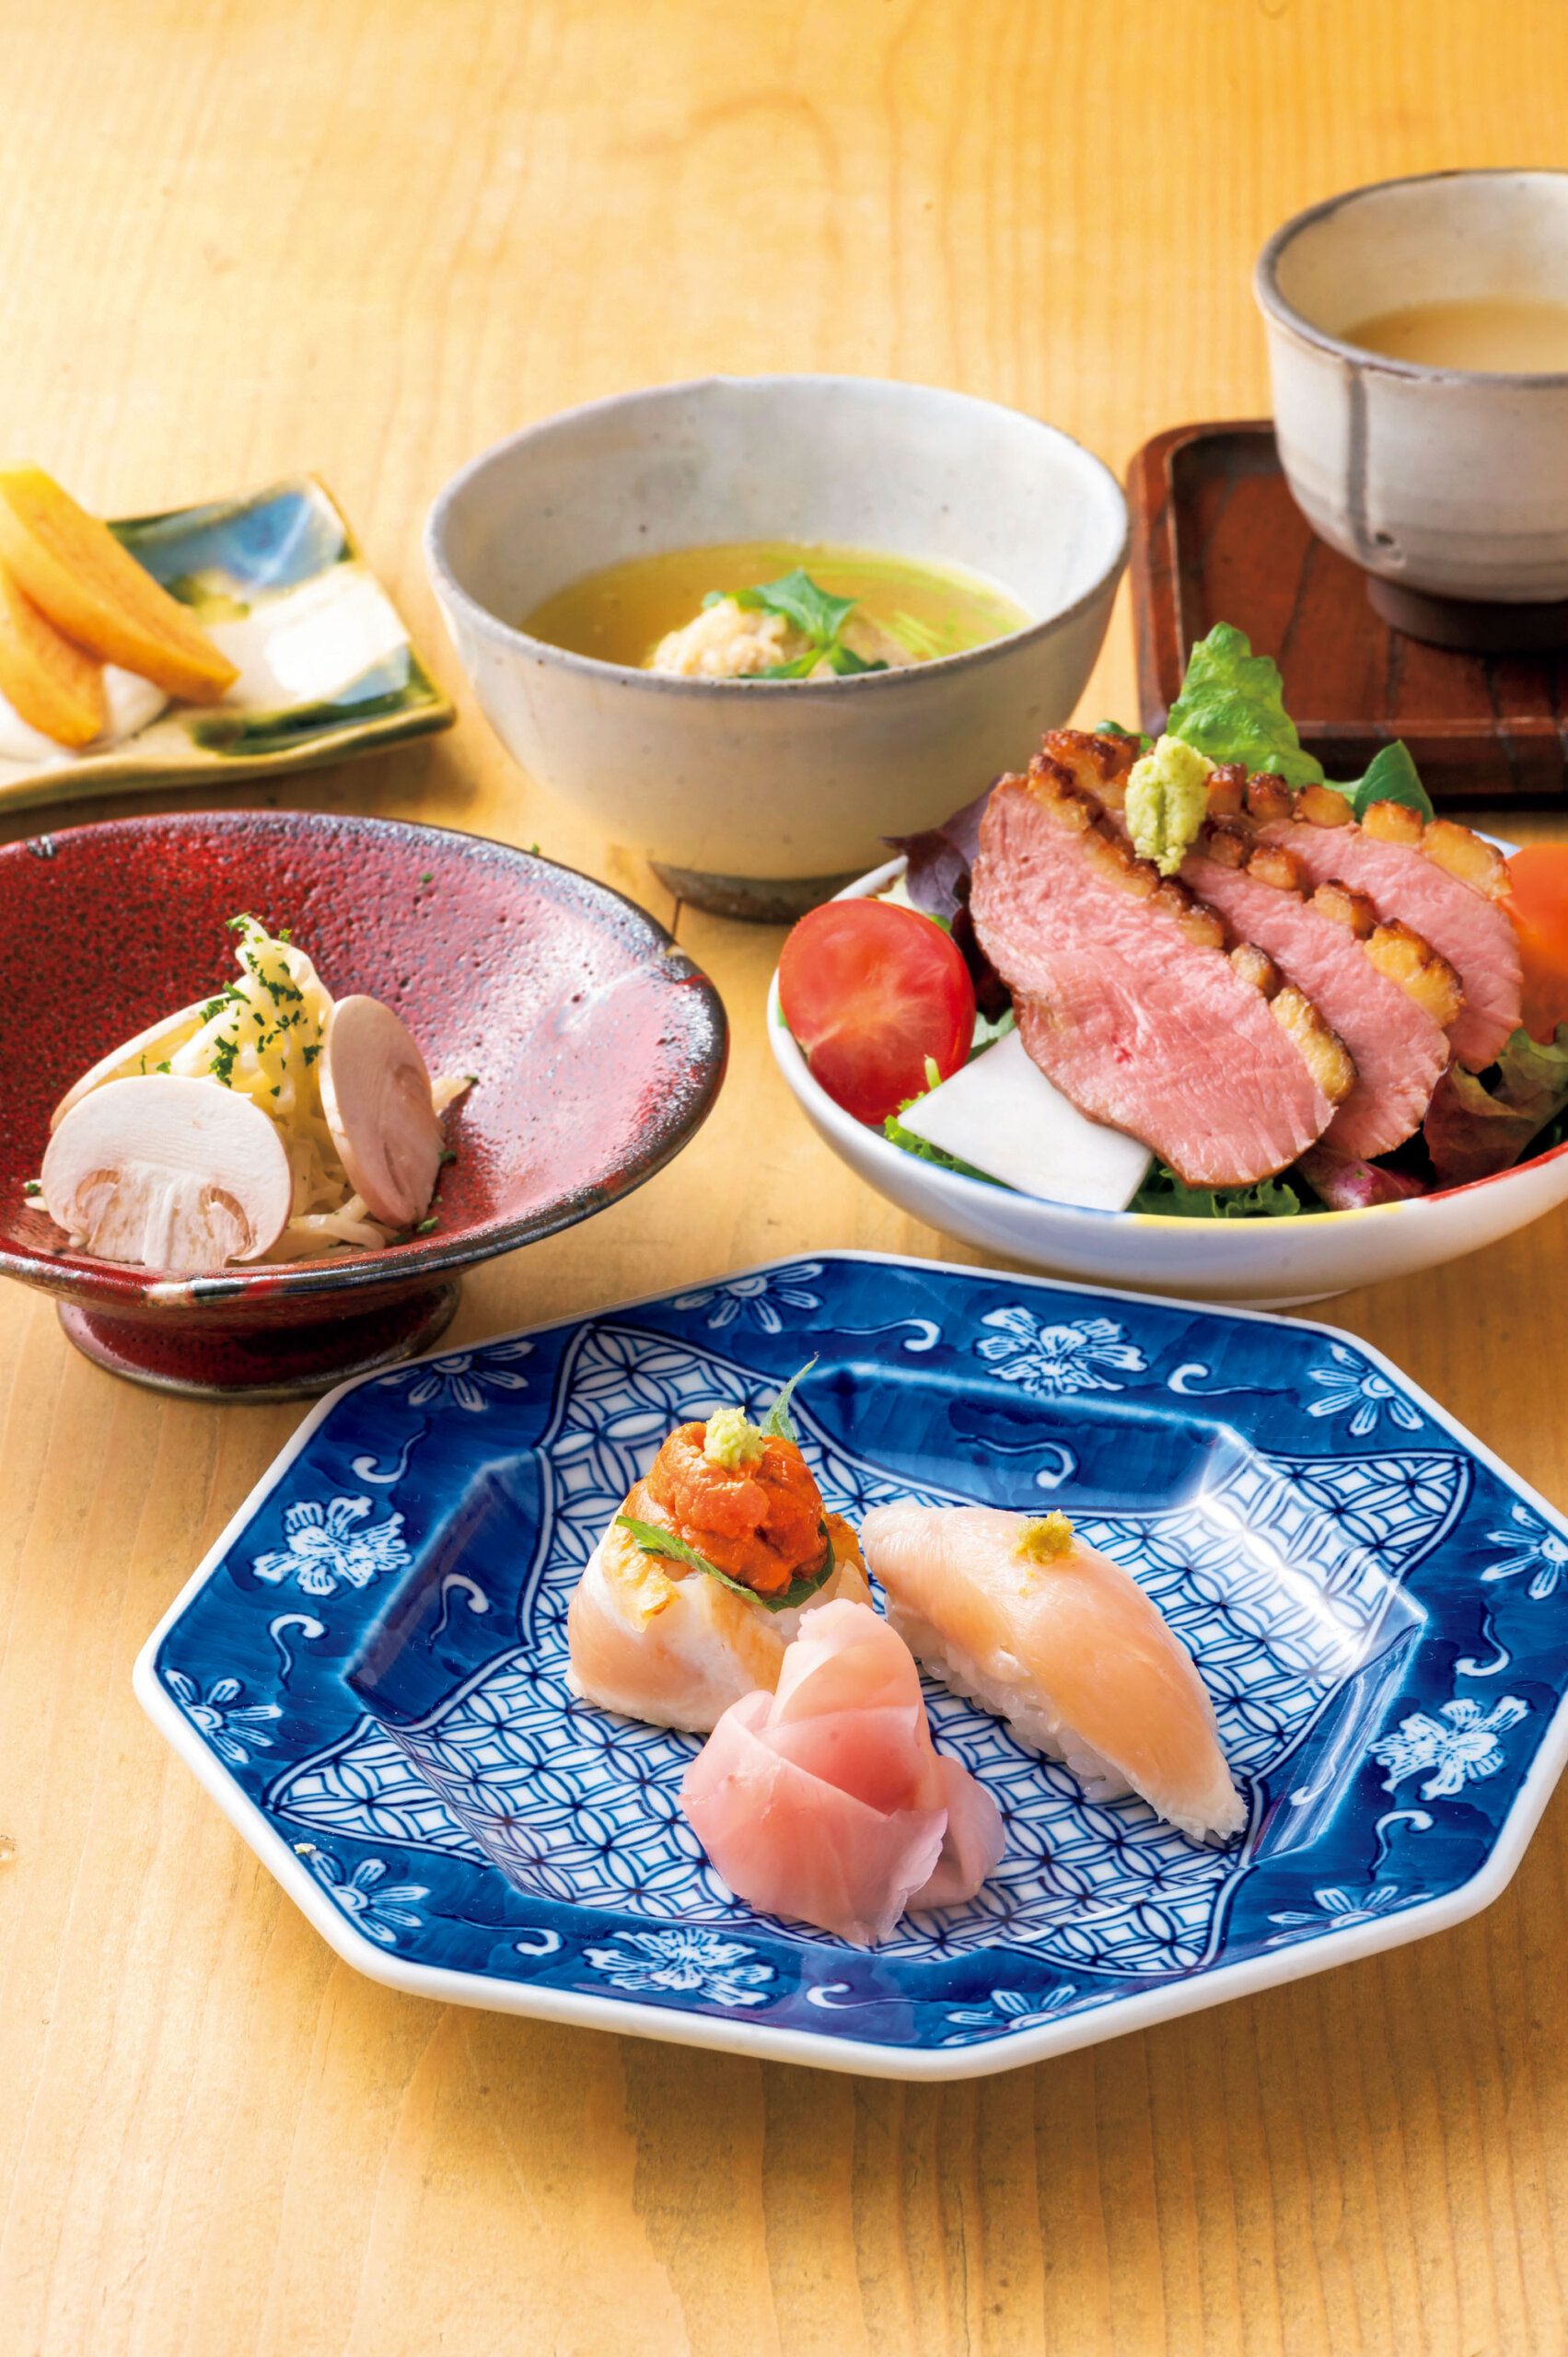 『ヨシモリ』<br />
手前のお皿から時計回りに、鳥のお寿司、小鉢2種、蒸しつくね、スープ、一品<br />
串の途中で供される料理の数々。懐石を意識したコース仕立てだ。最近復活した人気の「鳥のお寿司」はササミの握り＆ムネ肉のたたきとウニの寿司。蒸しつくねは「たて森」から受け継ぐ名物。モモやぼんじりなどを挽いた独自のつくねを生のまま和ダシで蒸す。ほわっとほどける食感